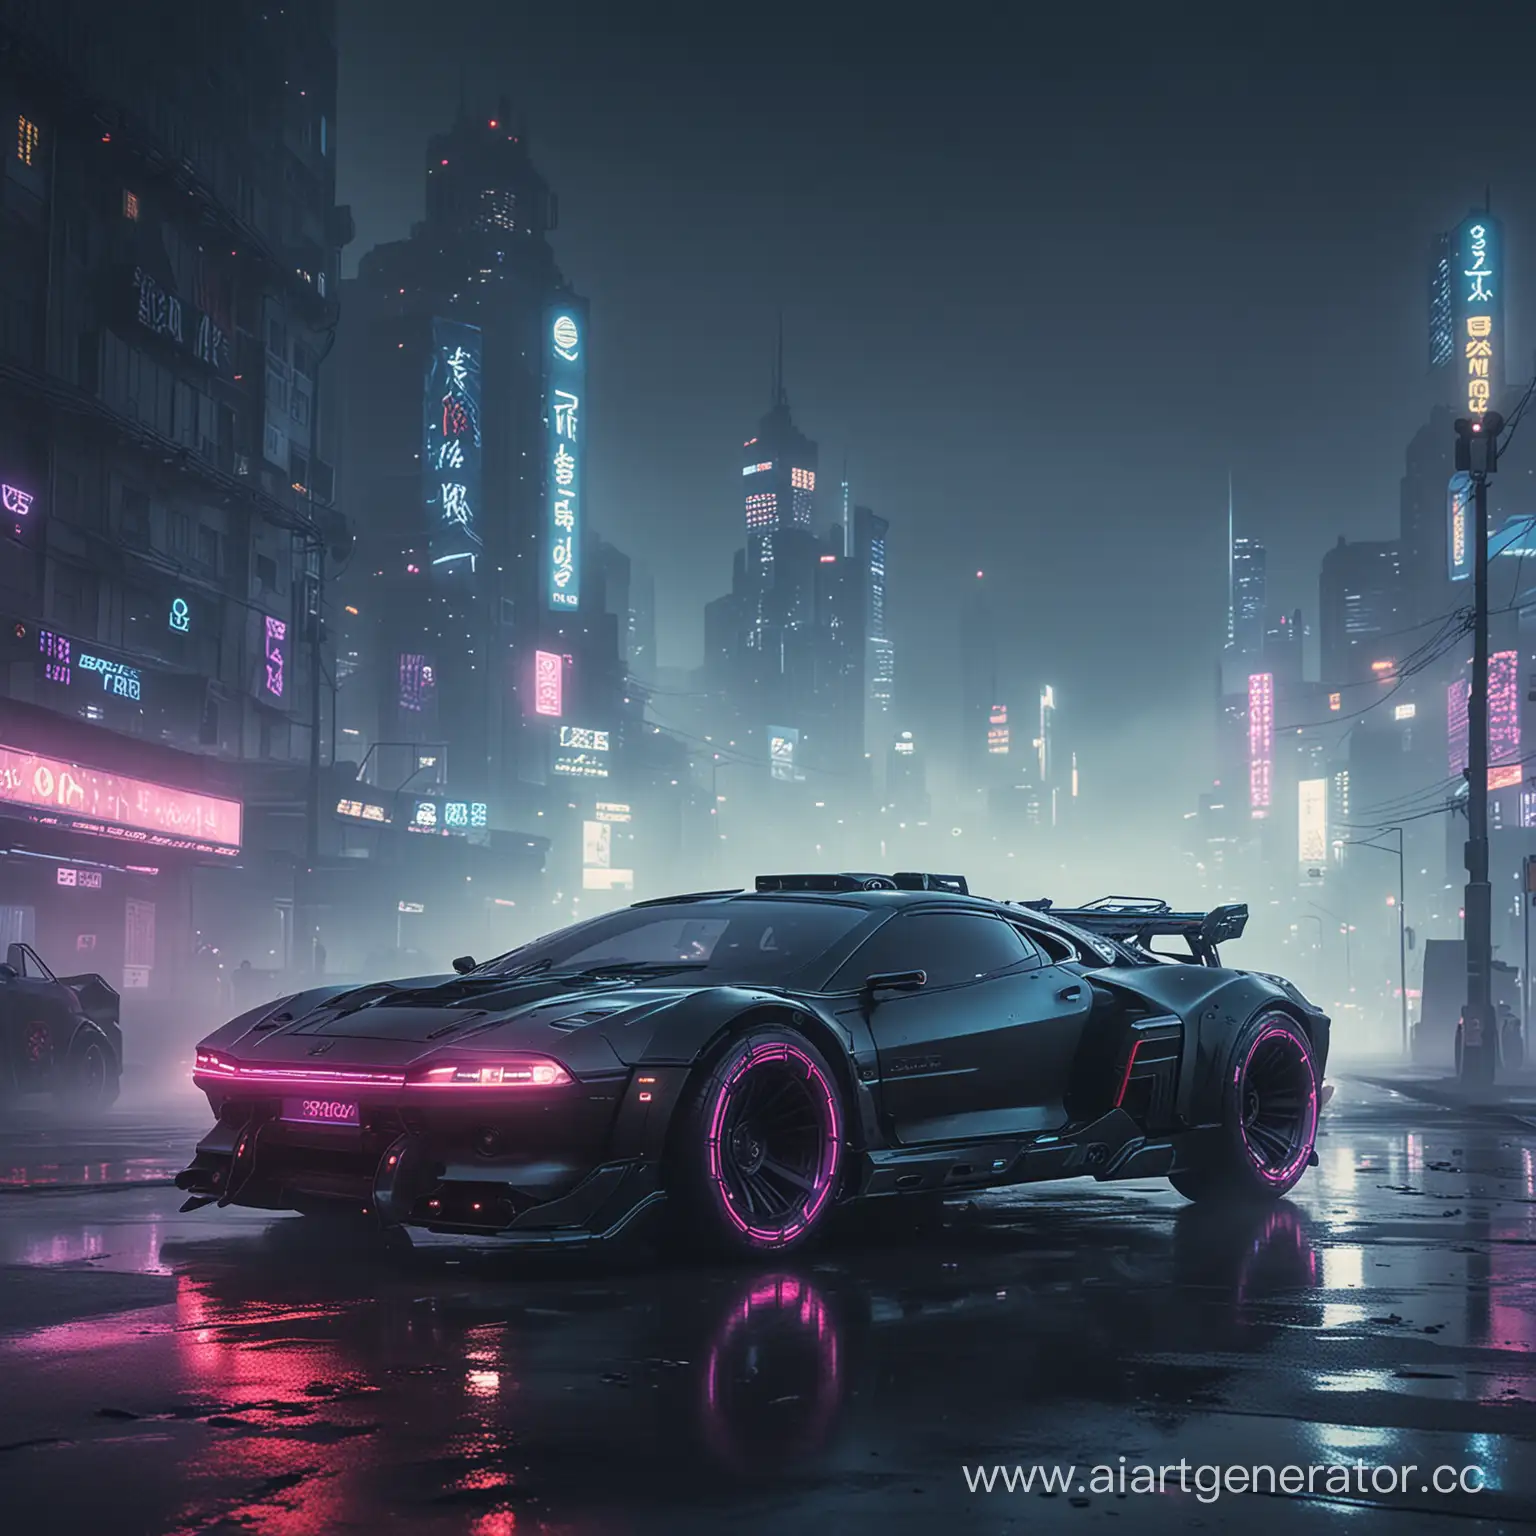 ночной, кибер панк, город, на переднем плане стоит дрифт машина из будущего, с неоновыми колесами, туман